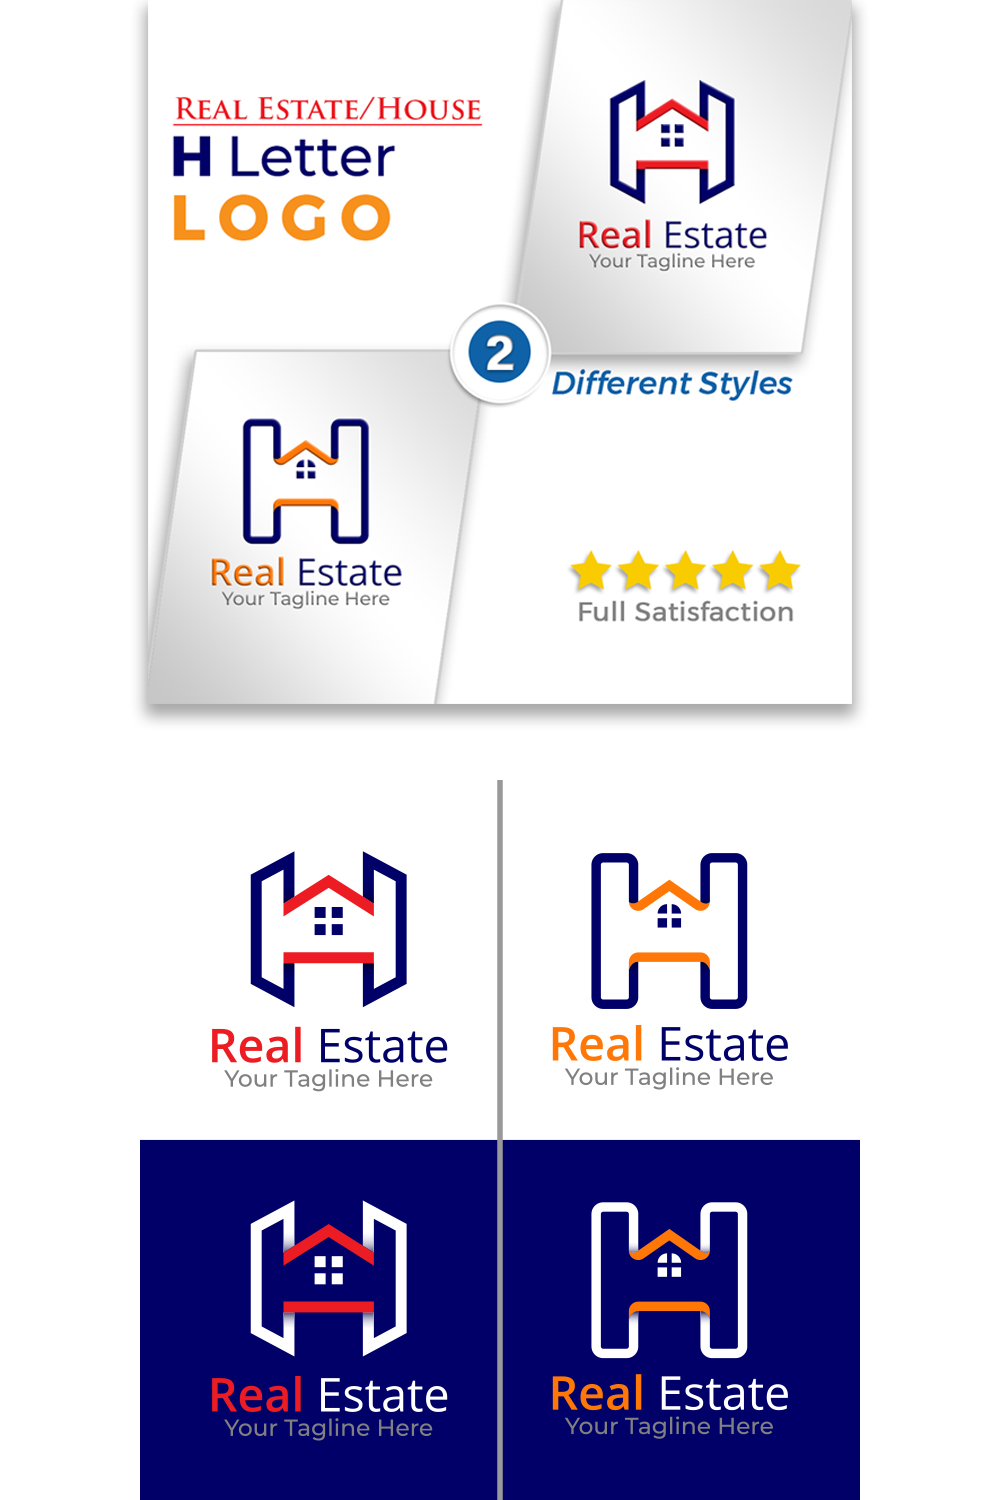 H Letter Real Estate Logo Design pinterest image.